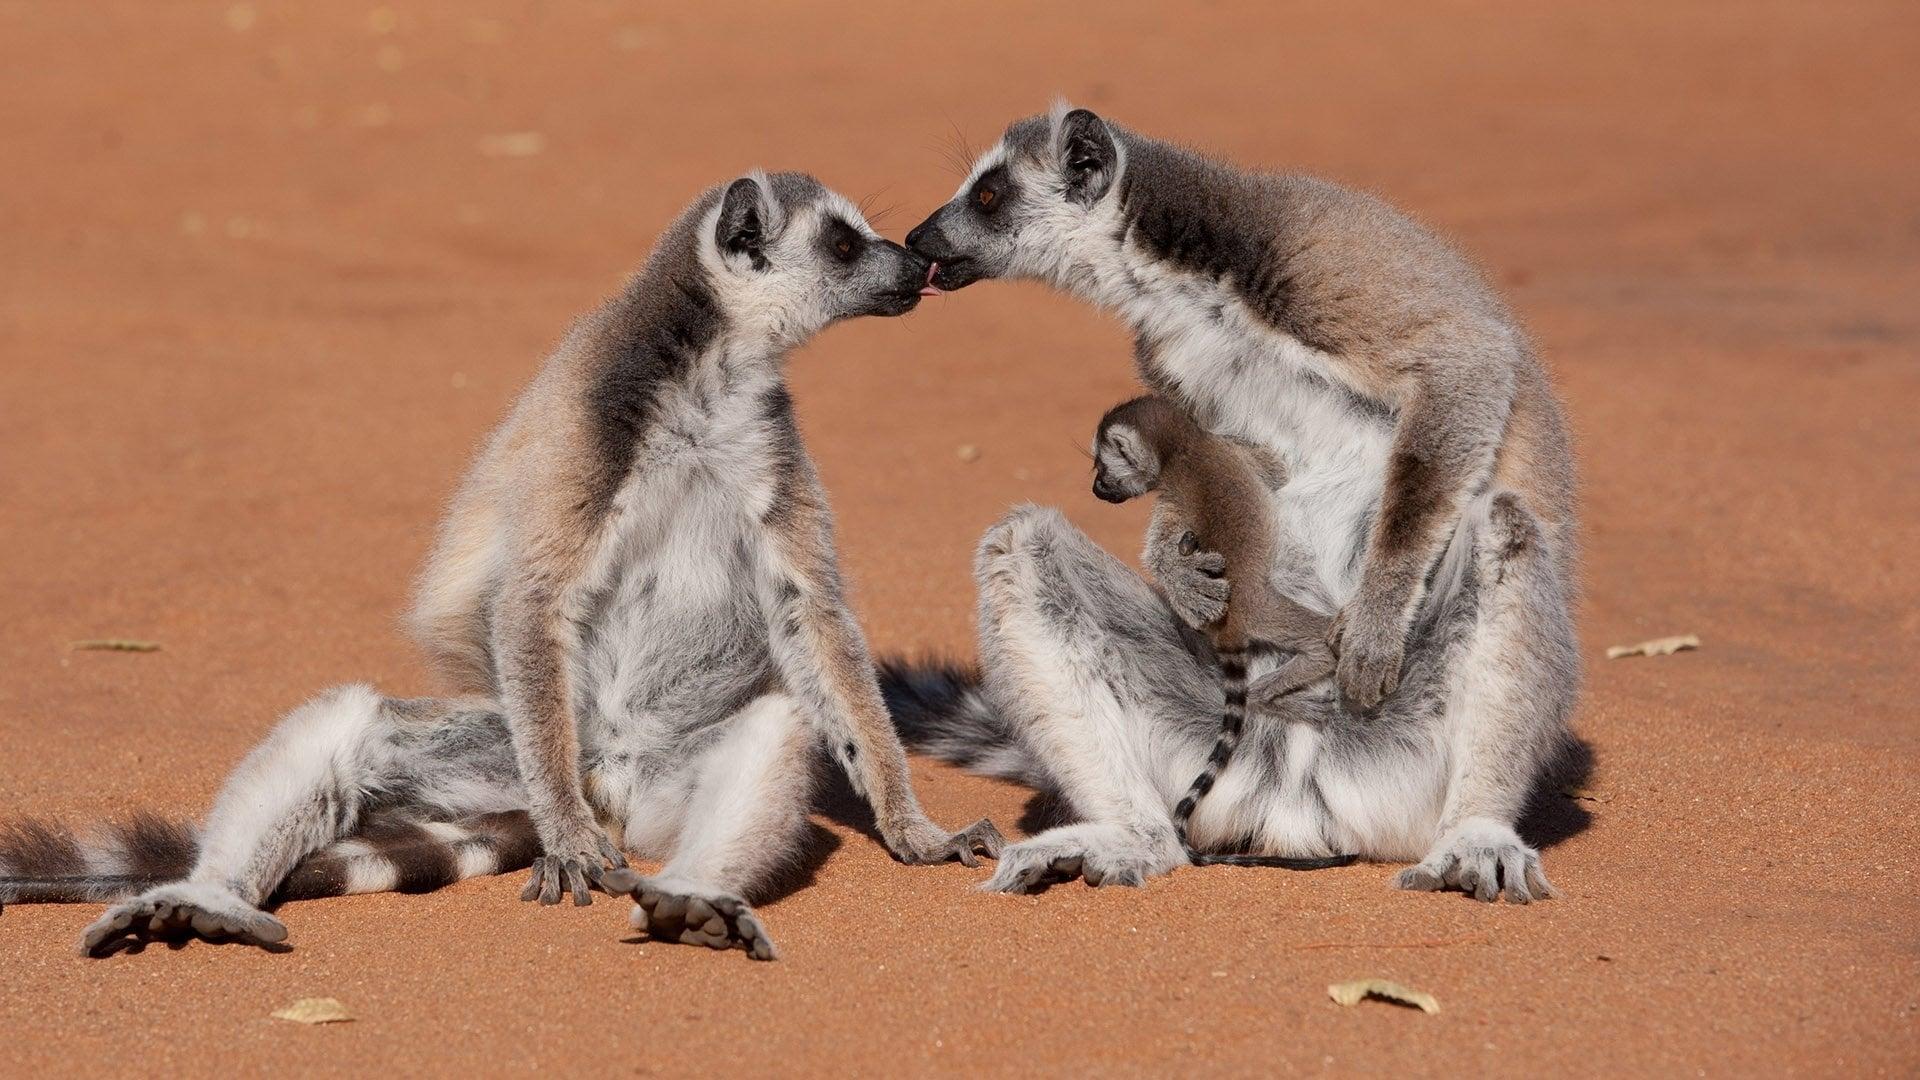 Island of Lemurs: Madagascar backdrop